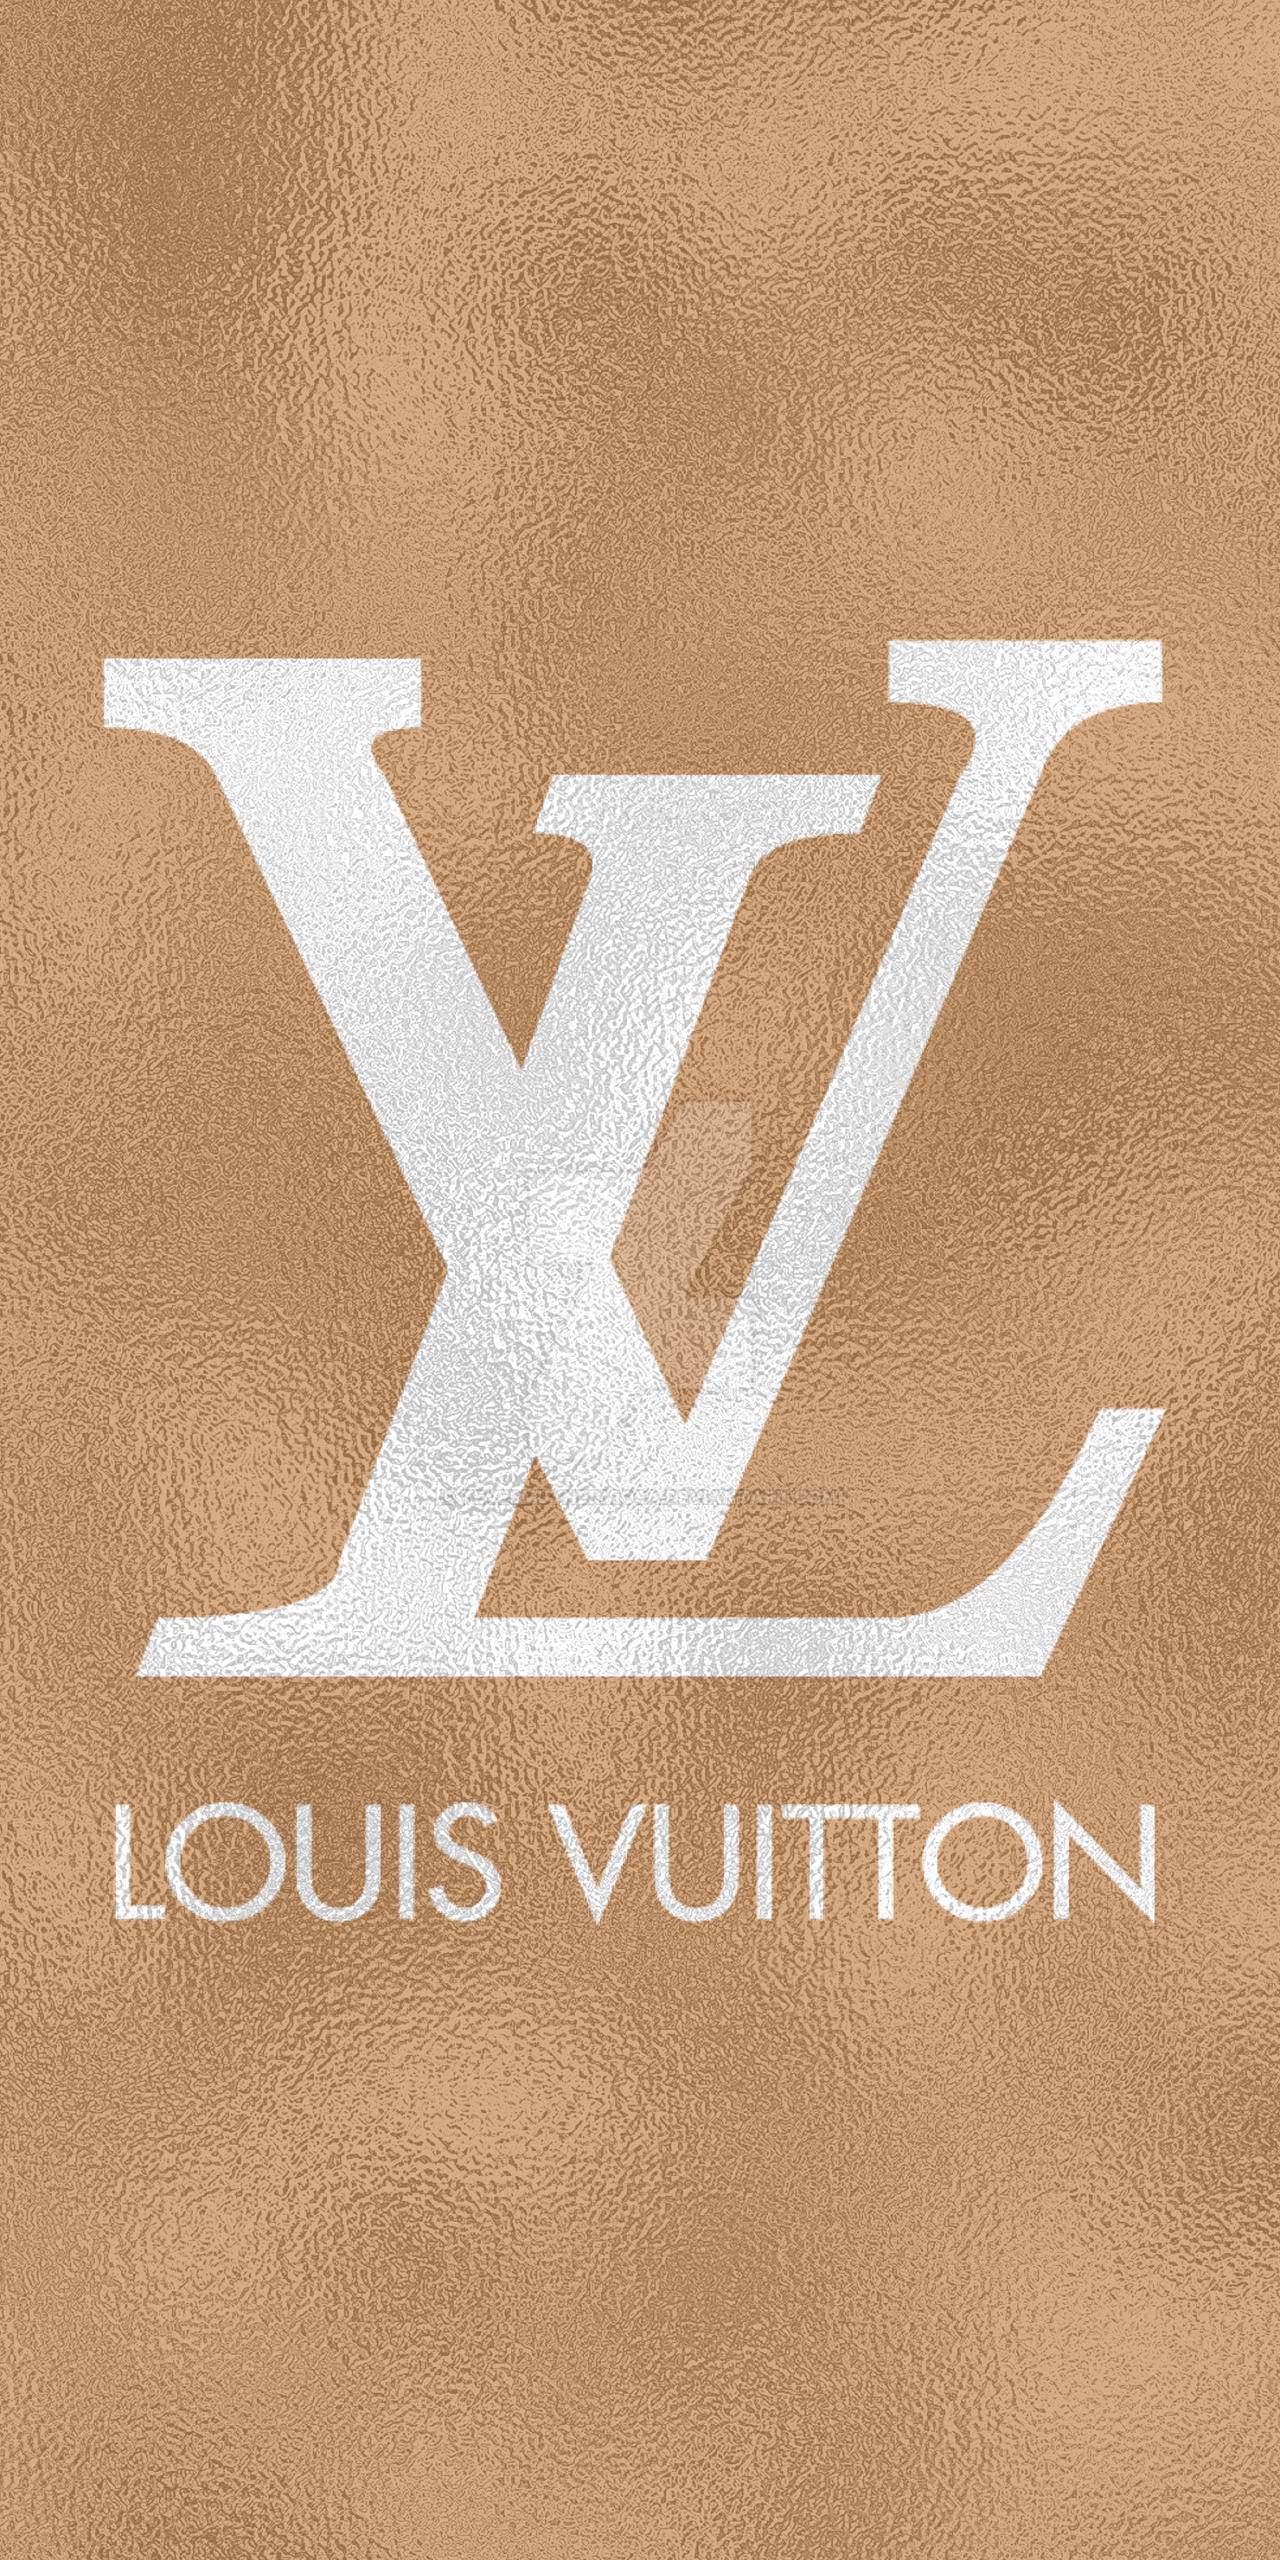 Louis Vuitton Monogram by TeVesMuyNerviosa on DeviantArt